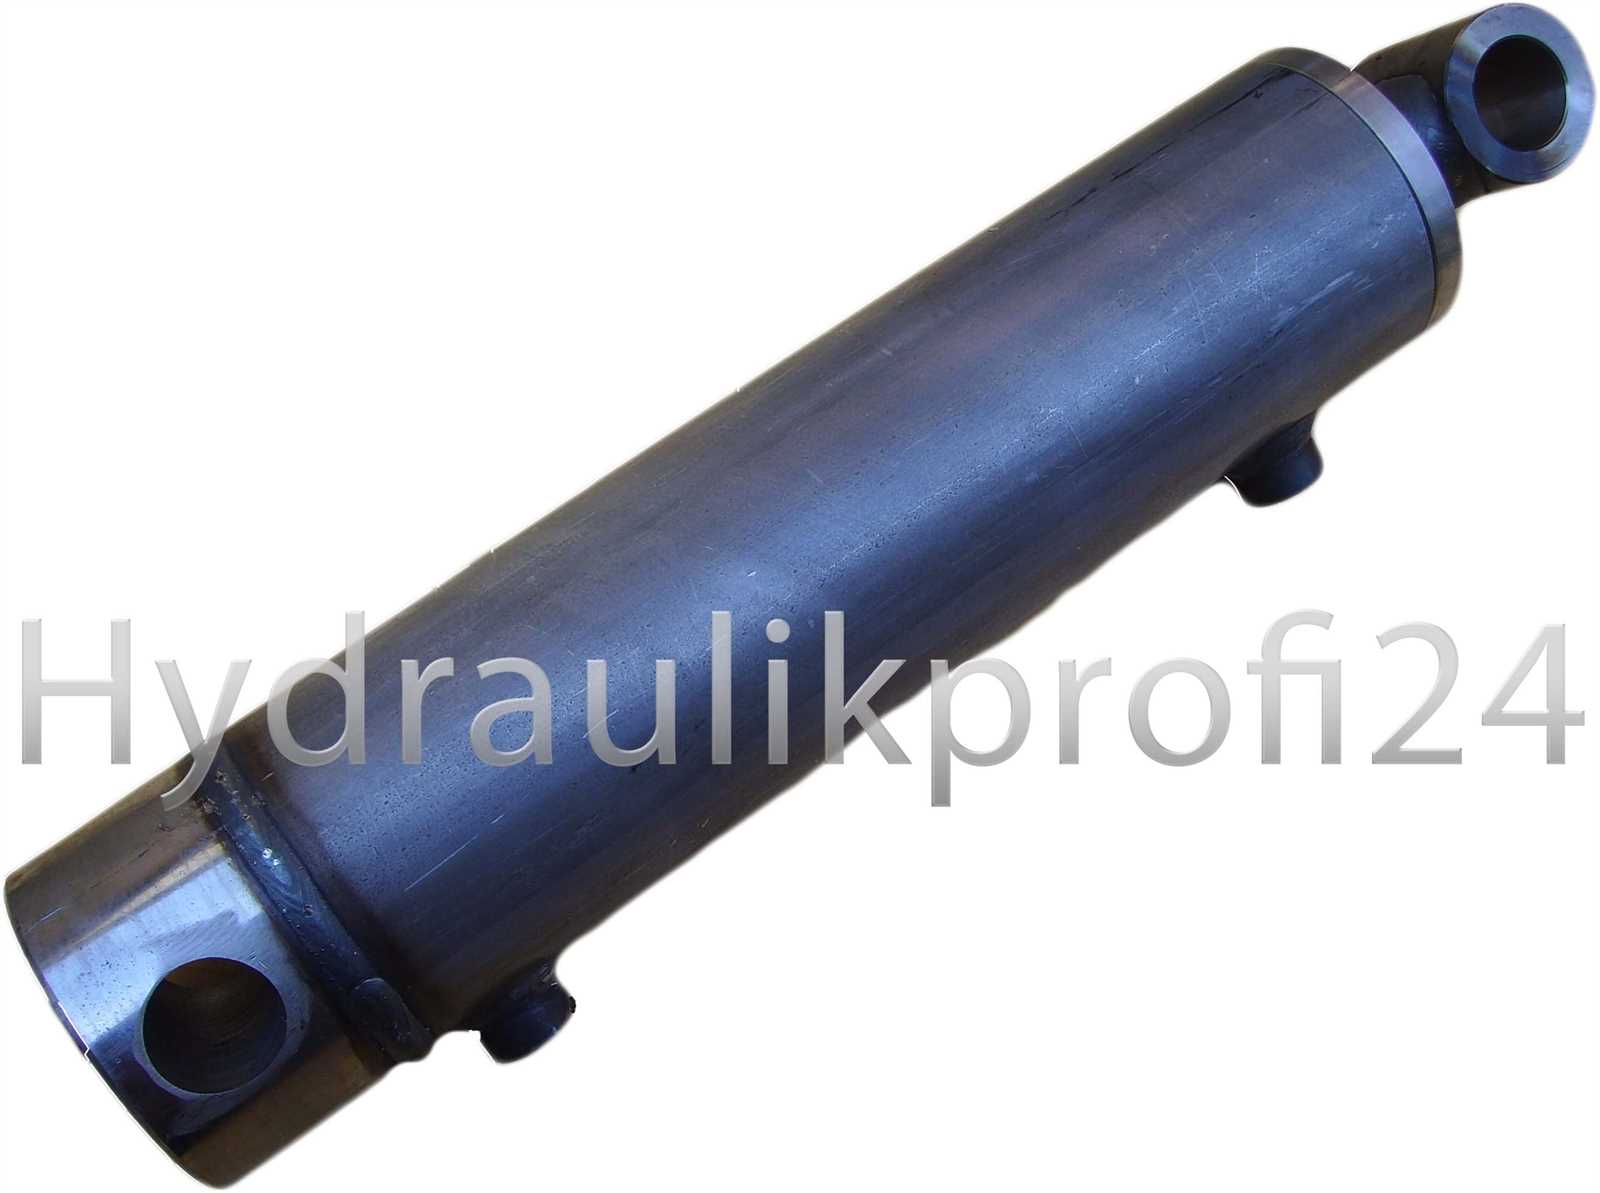 Hydraulikprofi24 - Hydraulikzylinder doppeltwirkend 60-100-1500 für  Holzspalter mit Kopfflansch 170x170x20 mm